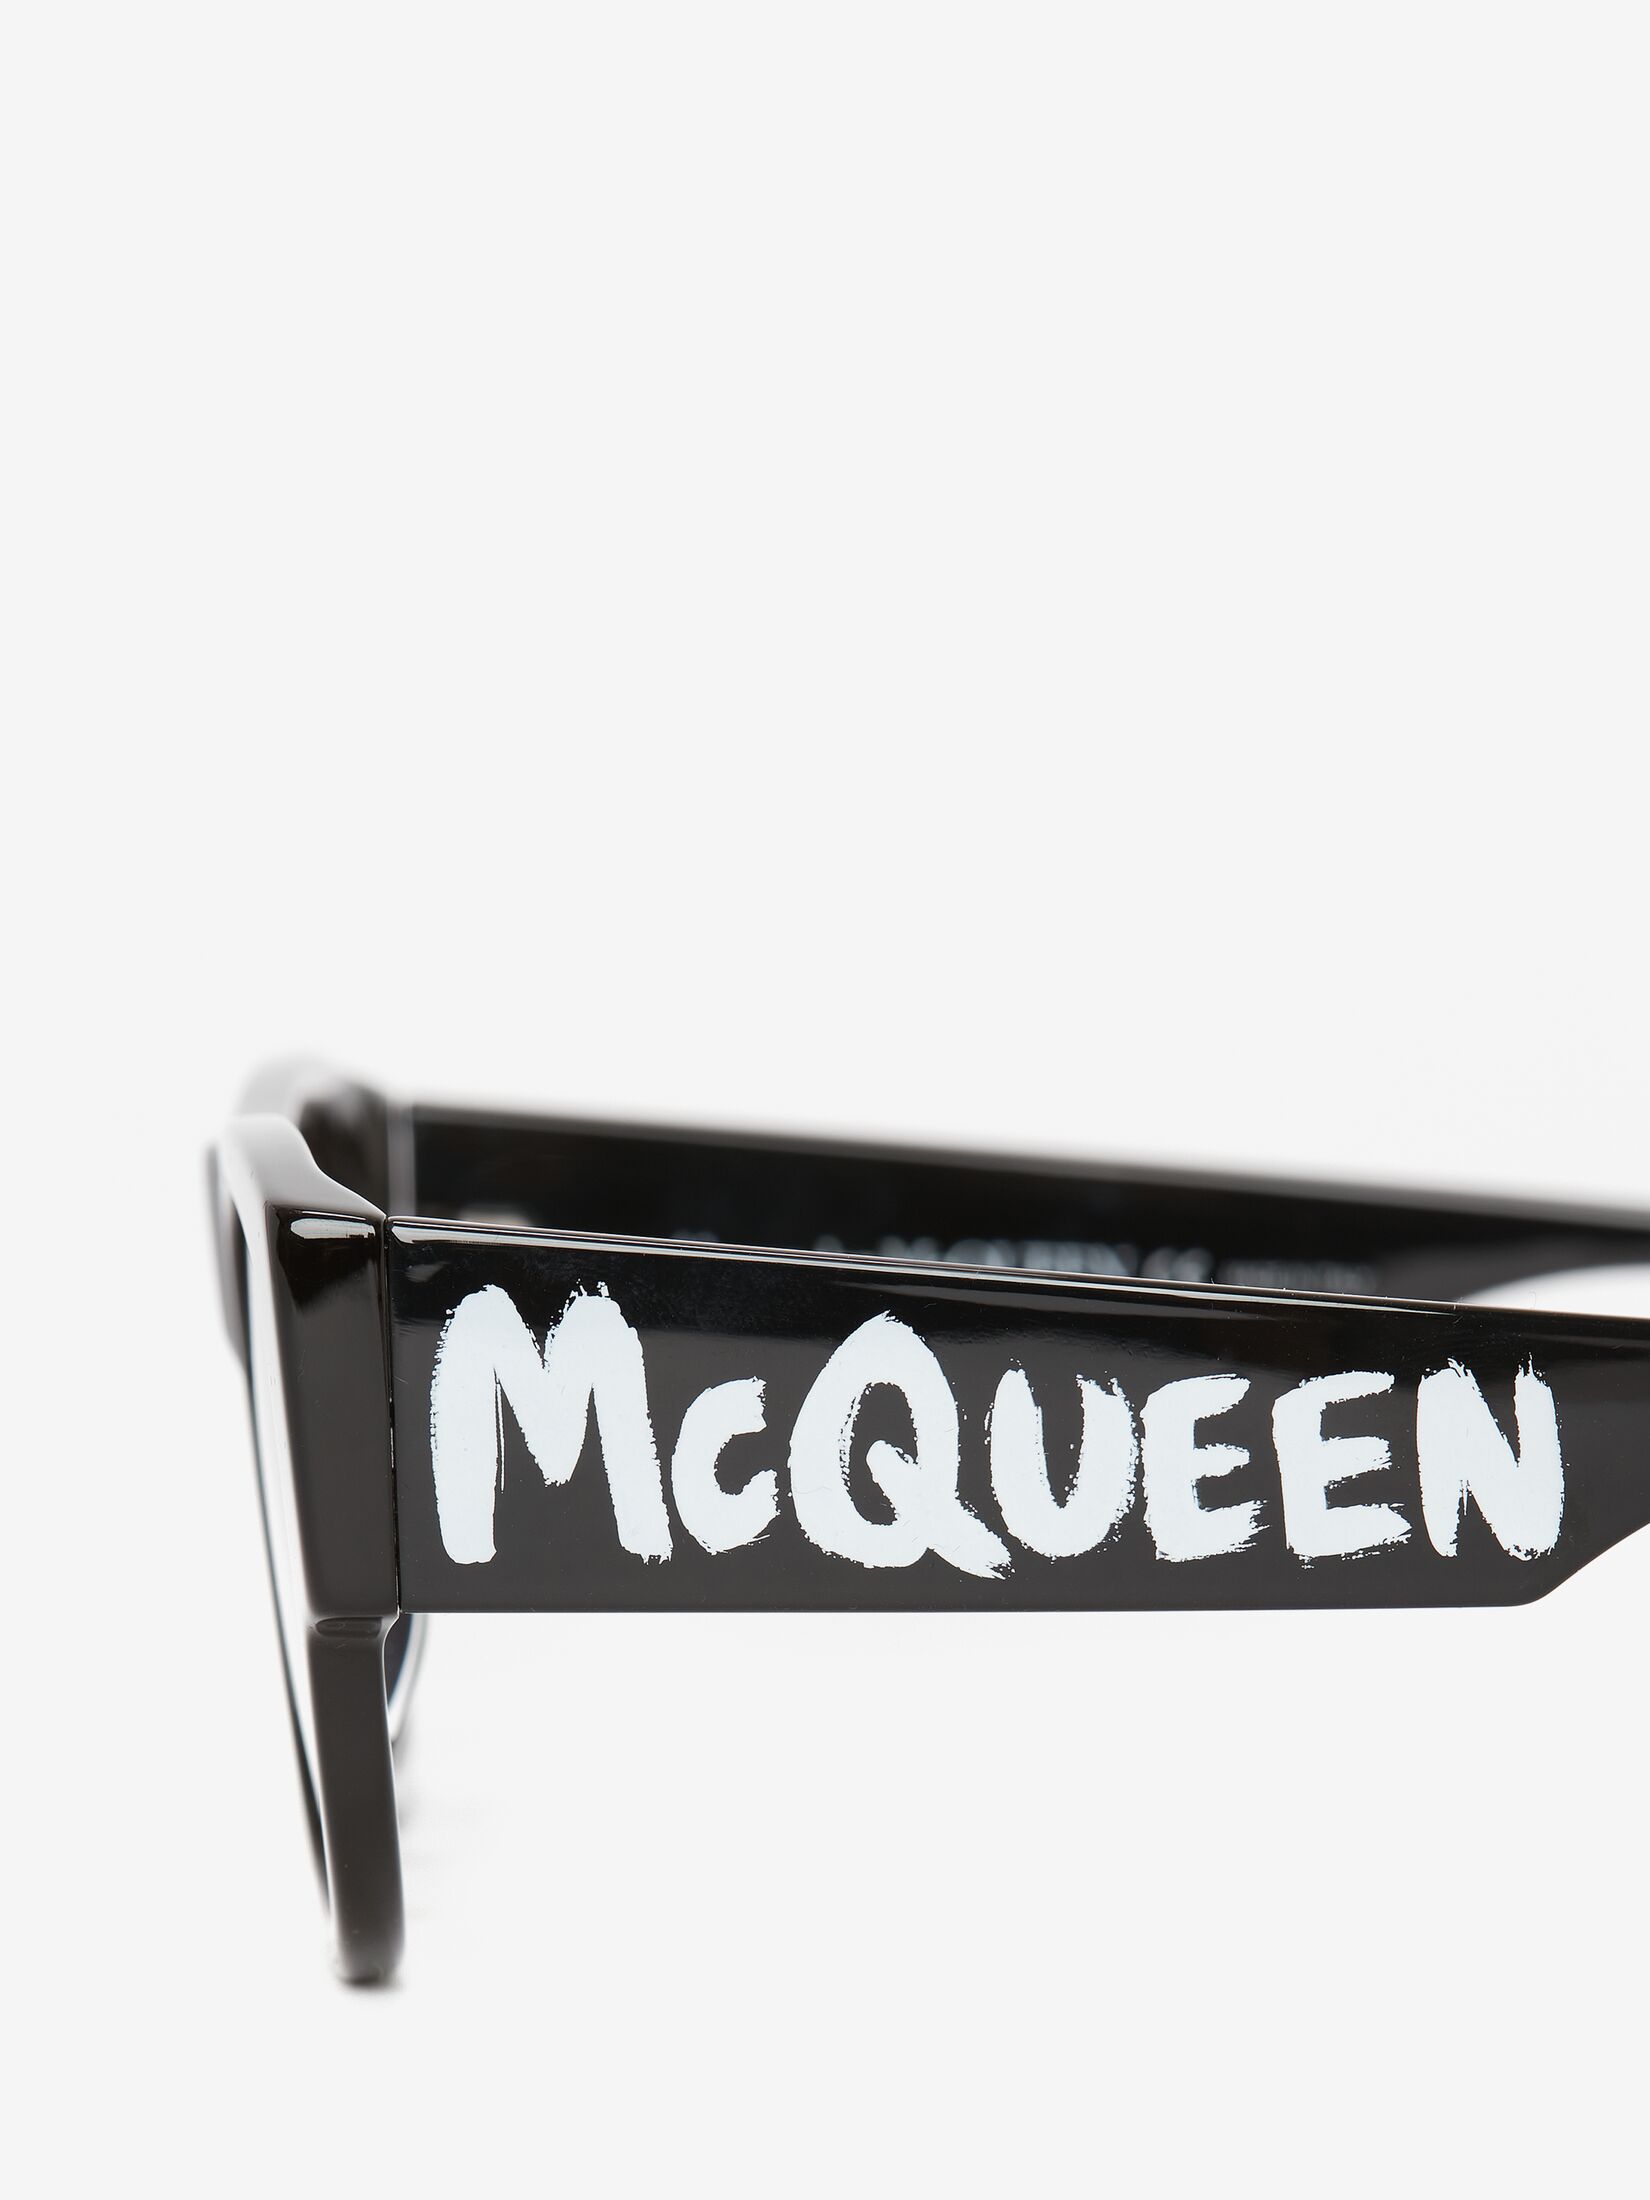 McQueen Graffiti レクタンギュラー サングラス